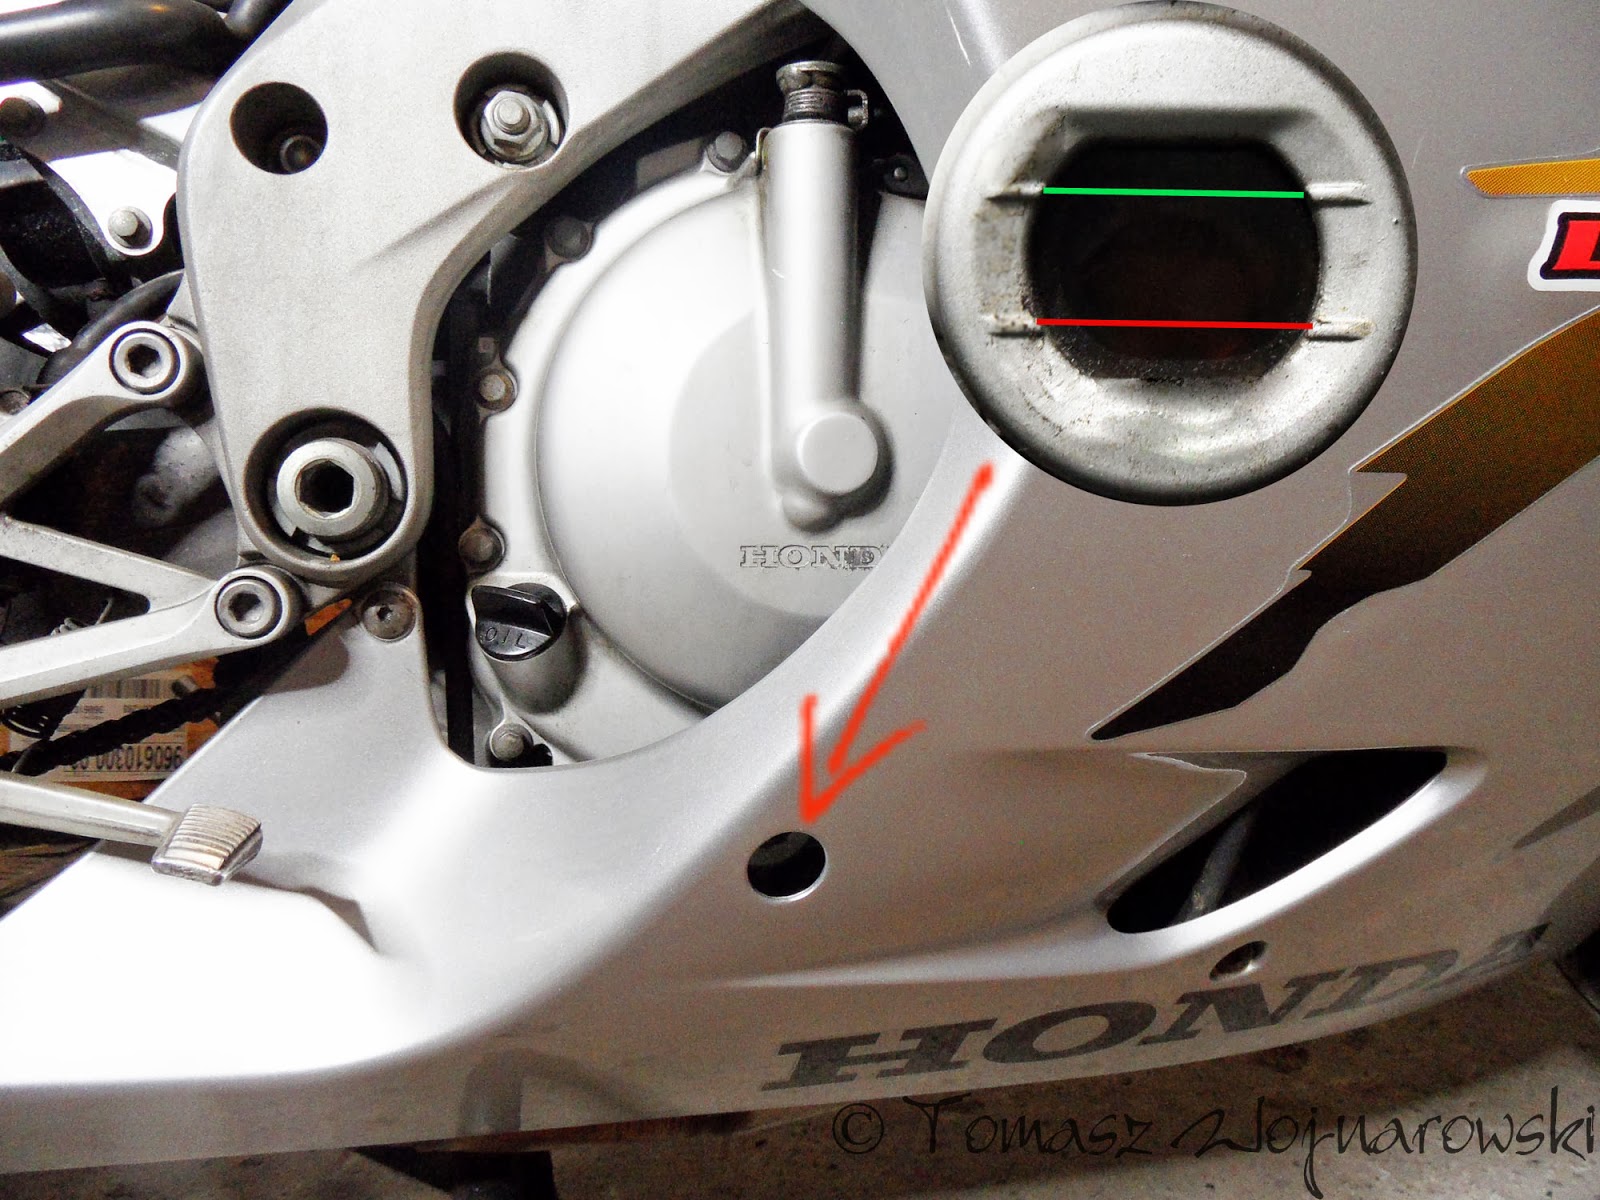 Sprawdzanie poziomu oleju CBR F4 przygoda z motocyklem